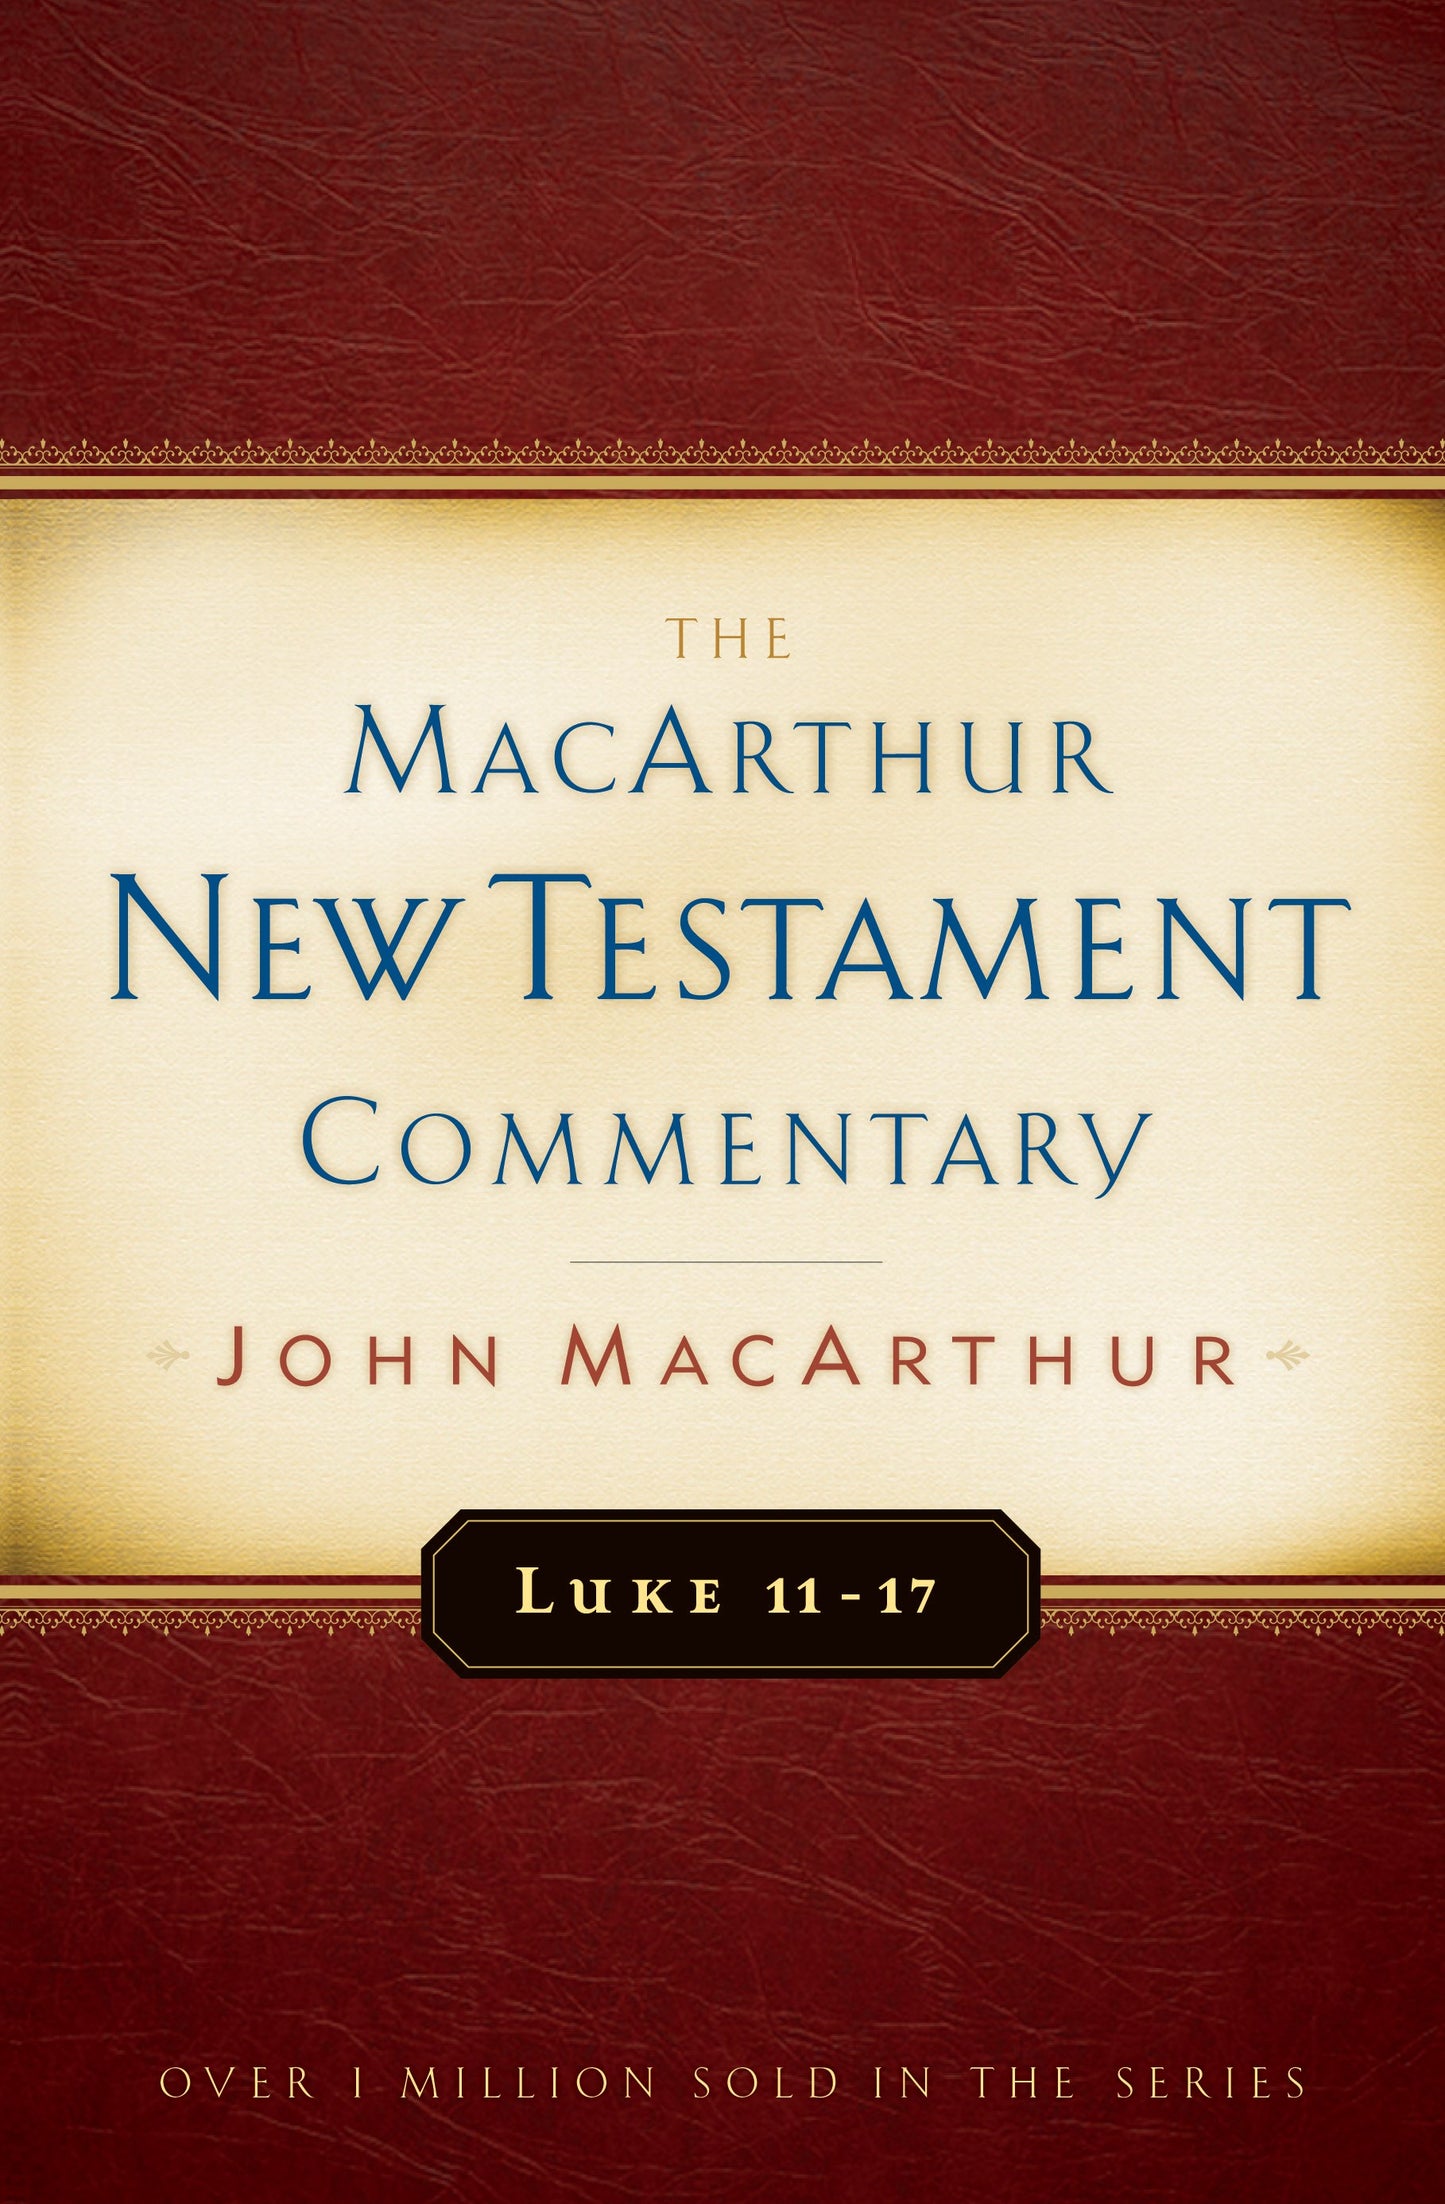 Luke 11-17 (MacArthur New Testament Commentary)